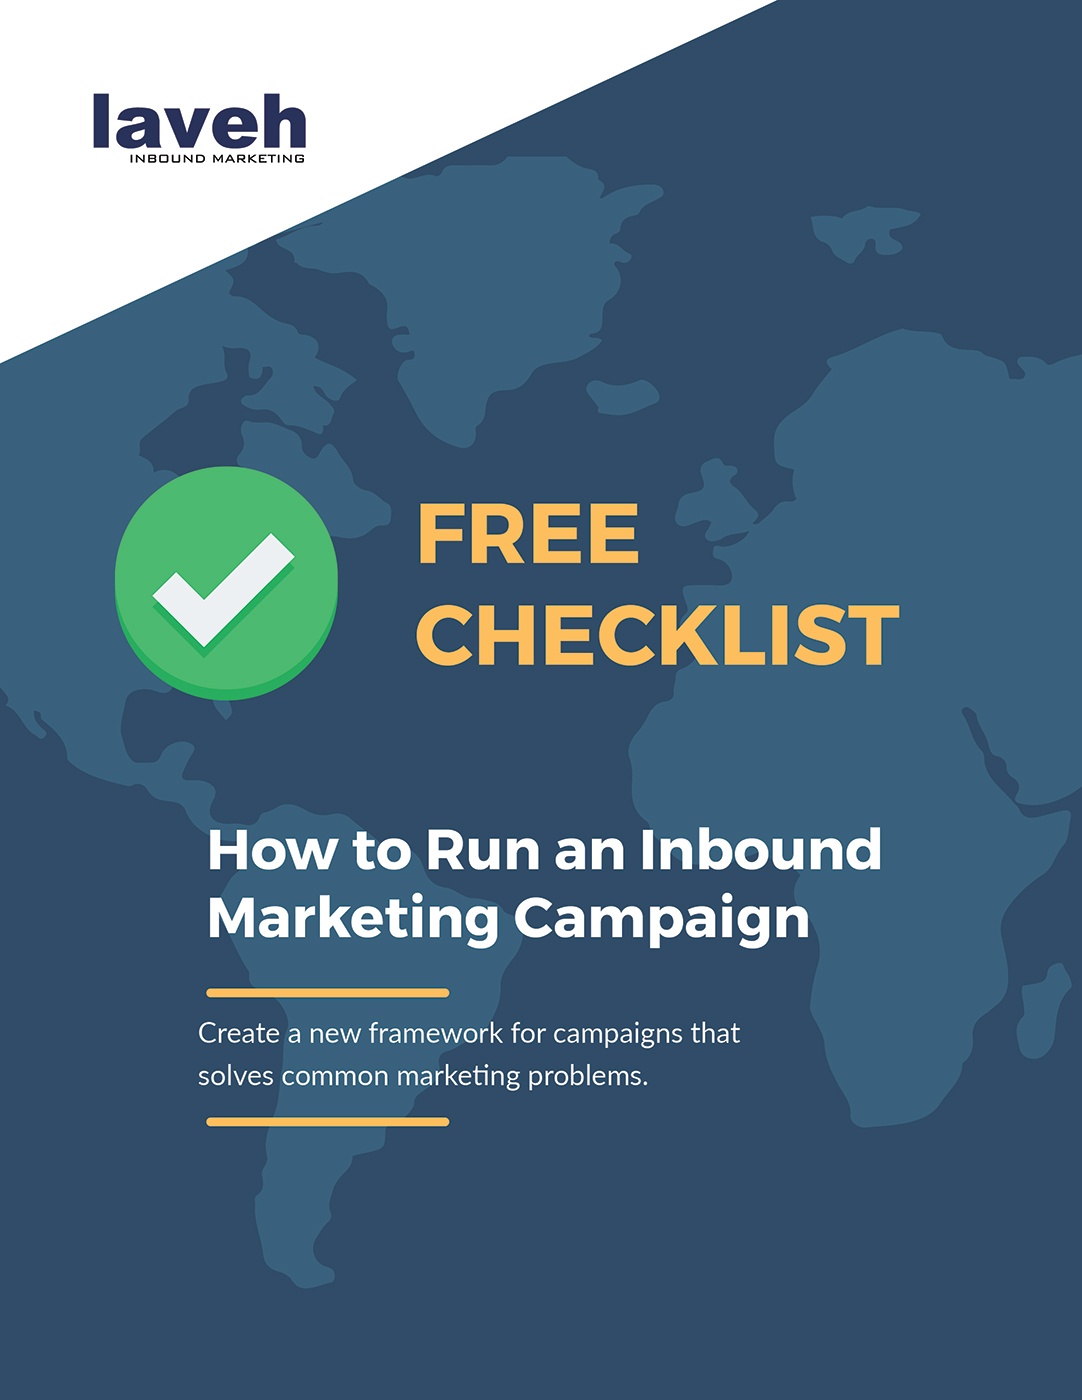 Free-Checklist-How-to-Run-an-Inbound-Marketing-Campaign.jpg